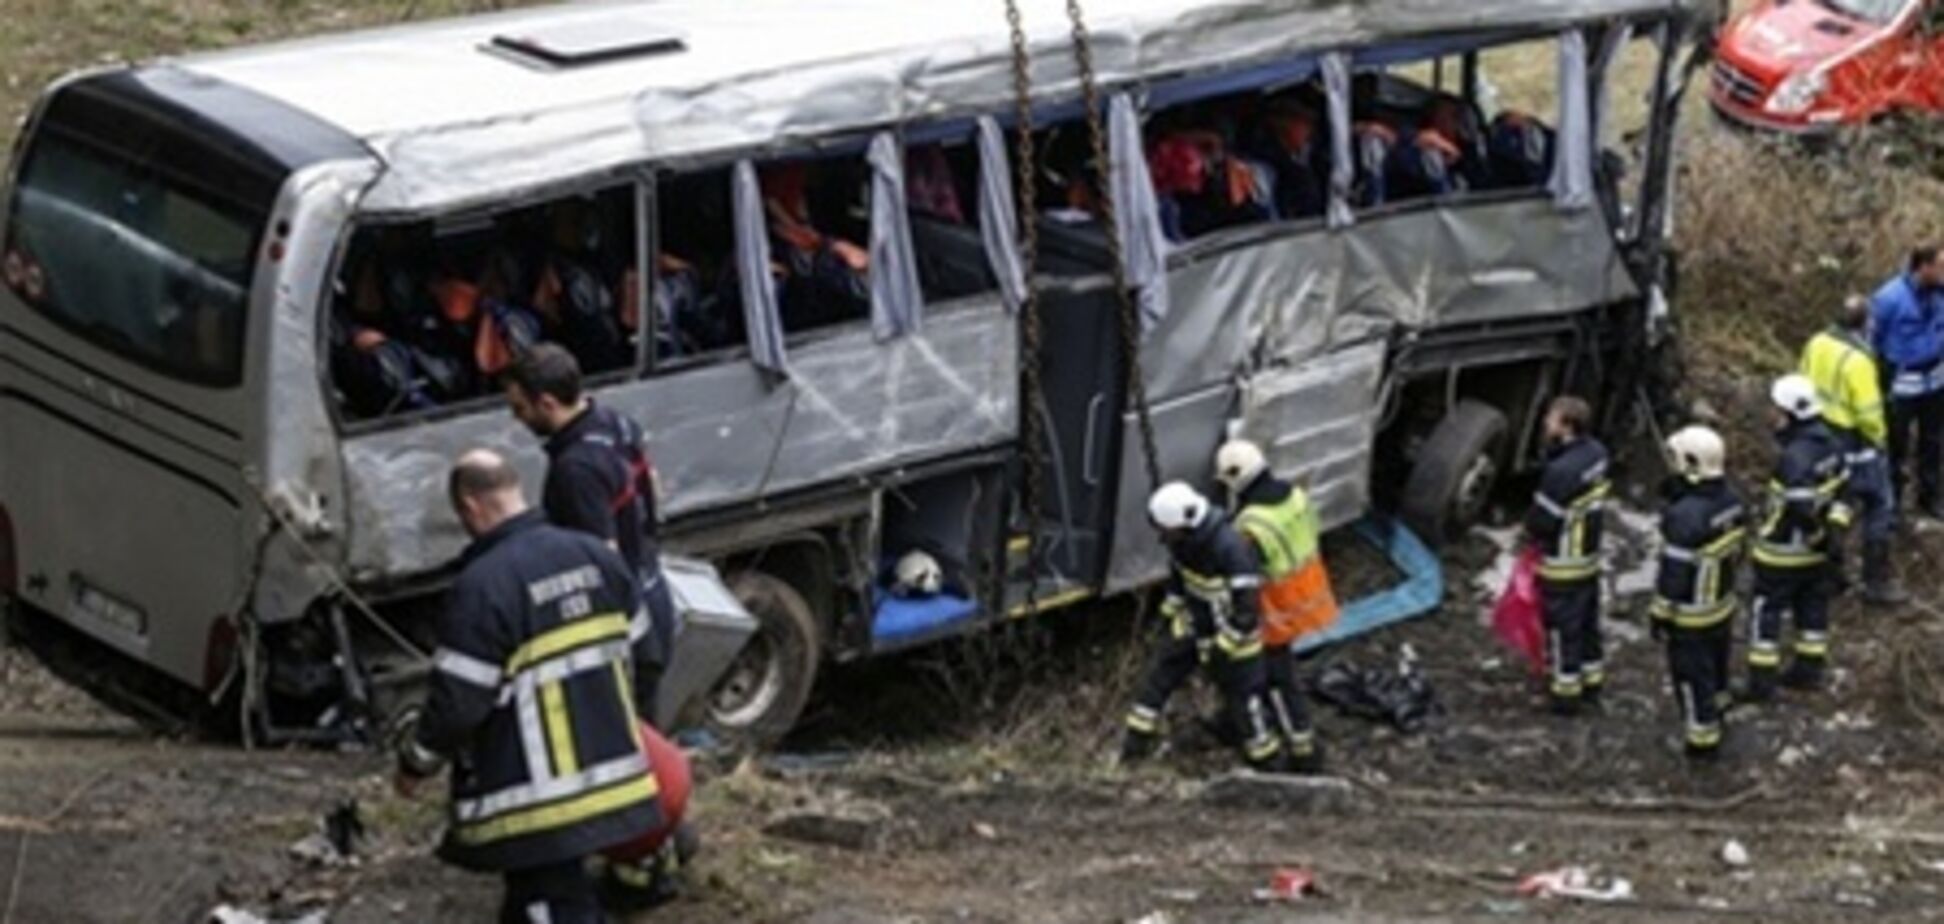 МЗС: громадян України не було в потрапив у ДТП в Бельгії автобусі 